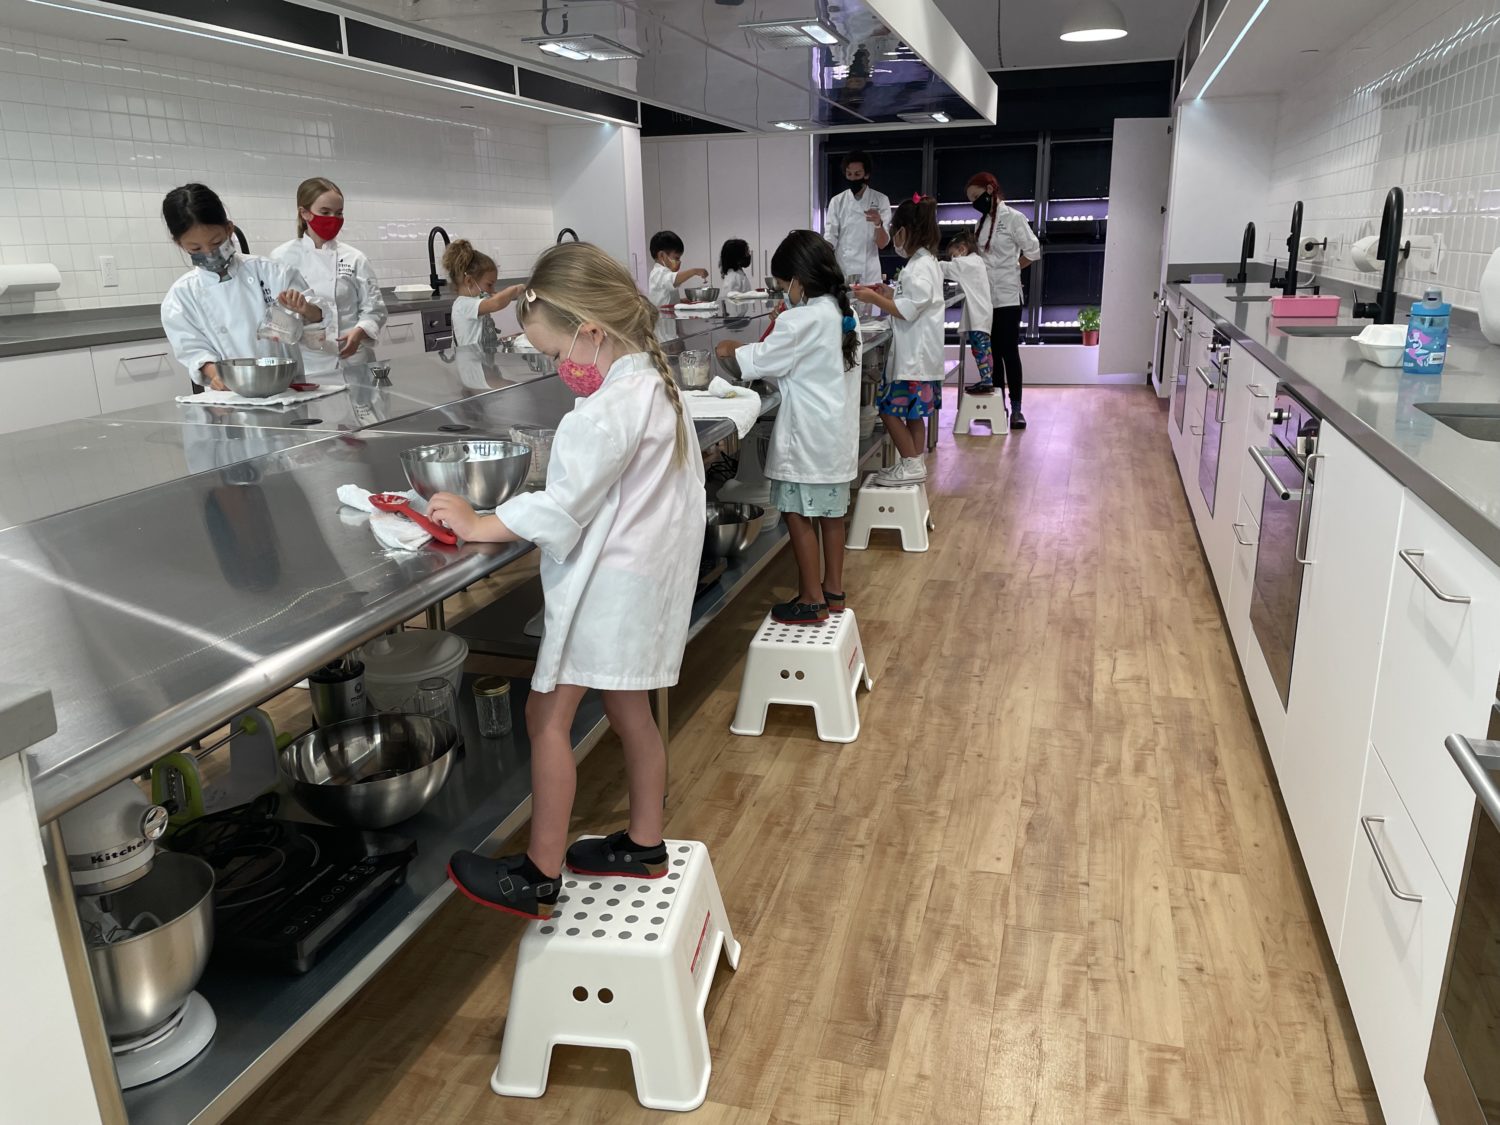 Little Kitchen Academy2 Michele Stueven